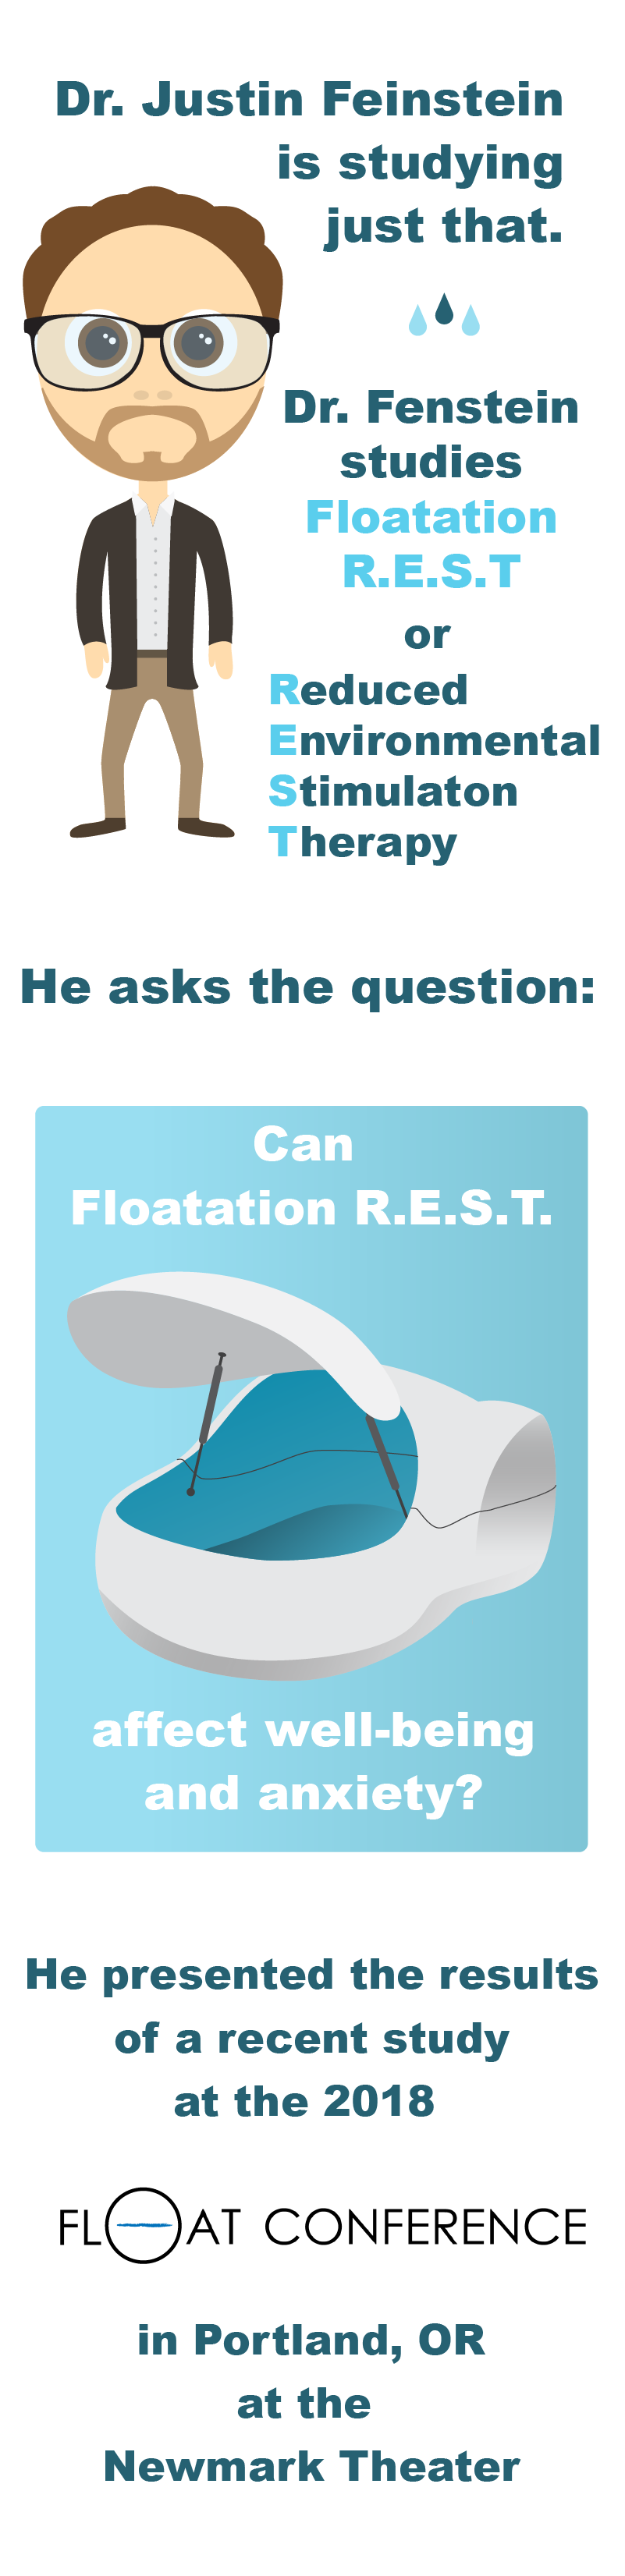 Dr. Justin Feinstein studies Floatation R.E.S.T.